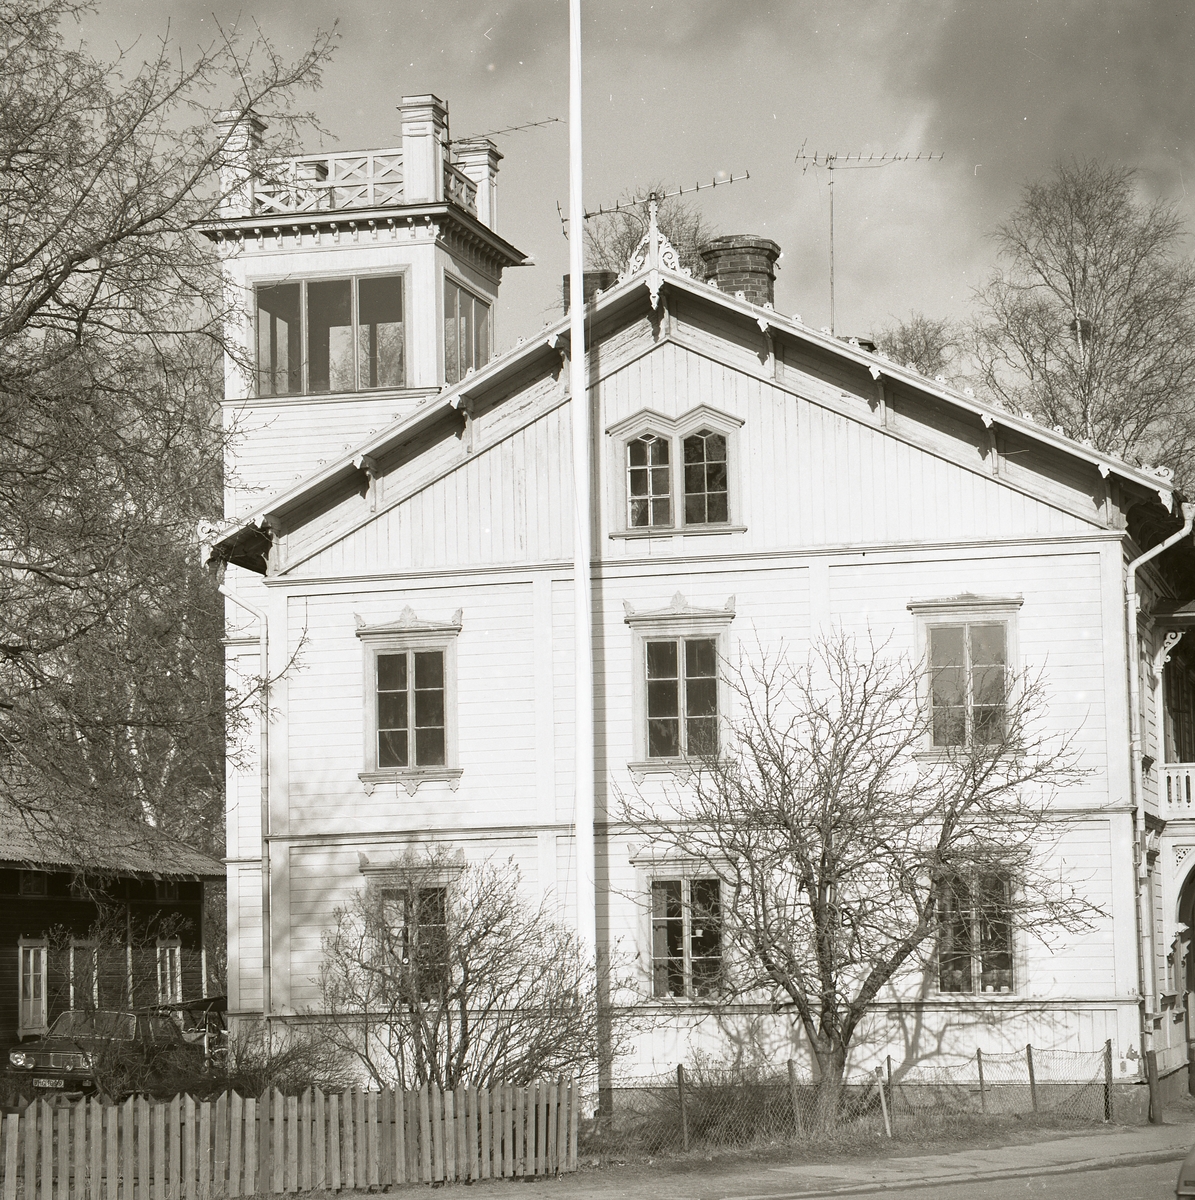 Ett stort boningshus av trä med fina detaljer runt fönster och tak, samt en tornbyggnad, Ljusdal 1982.